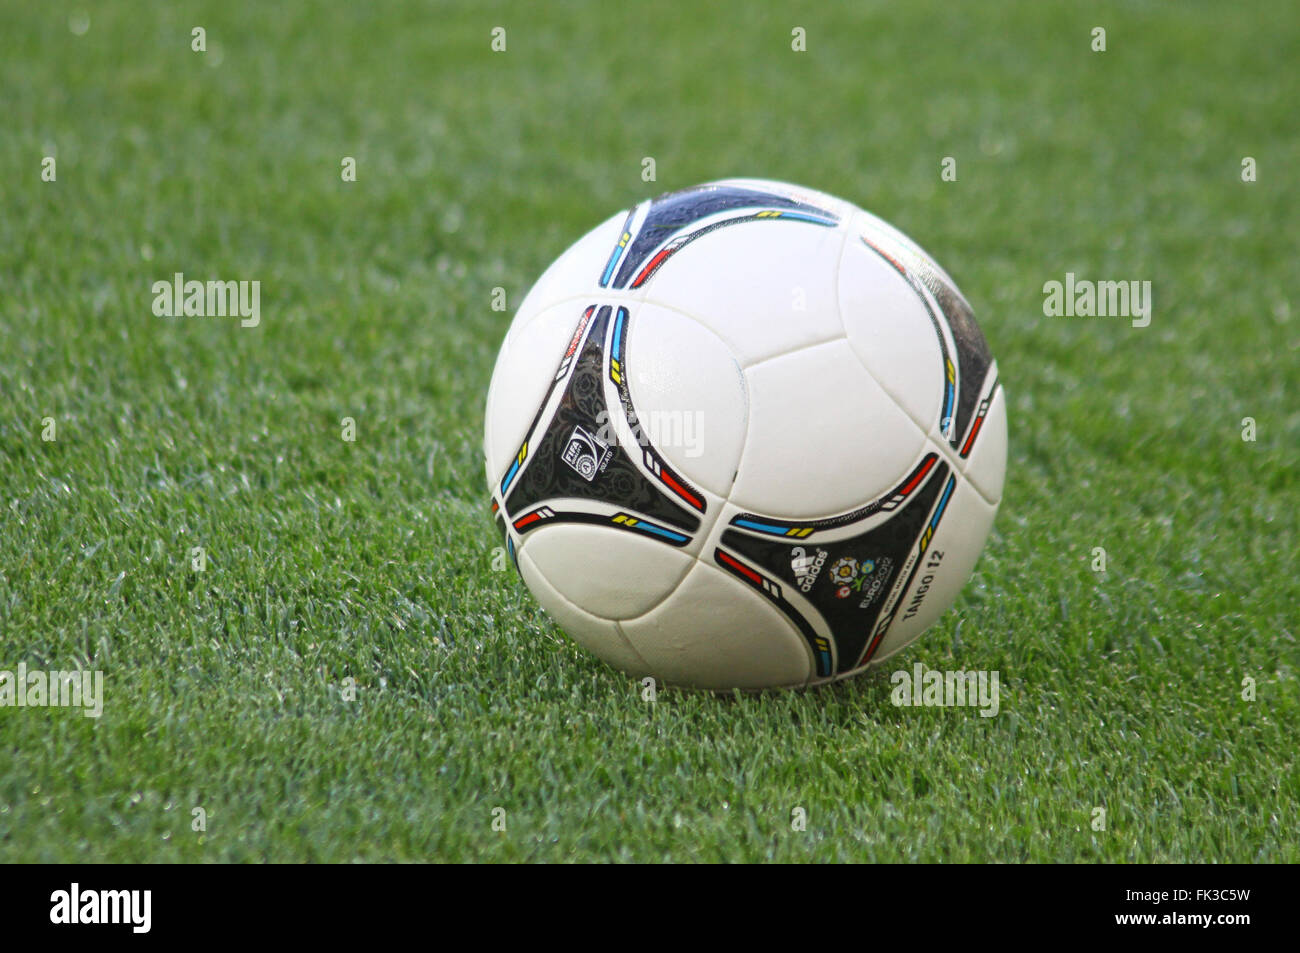 Kiev, UKRAINE - 10 MAI 2012 : Championnat officiel UEFA Euro 2012 (EURO 2012) balle sur l'herbe pendant le jeu être Banque D'Images